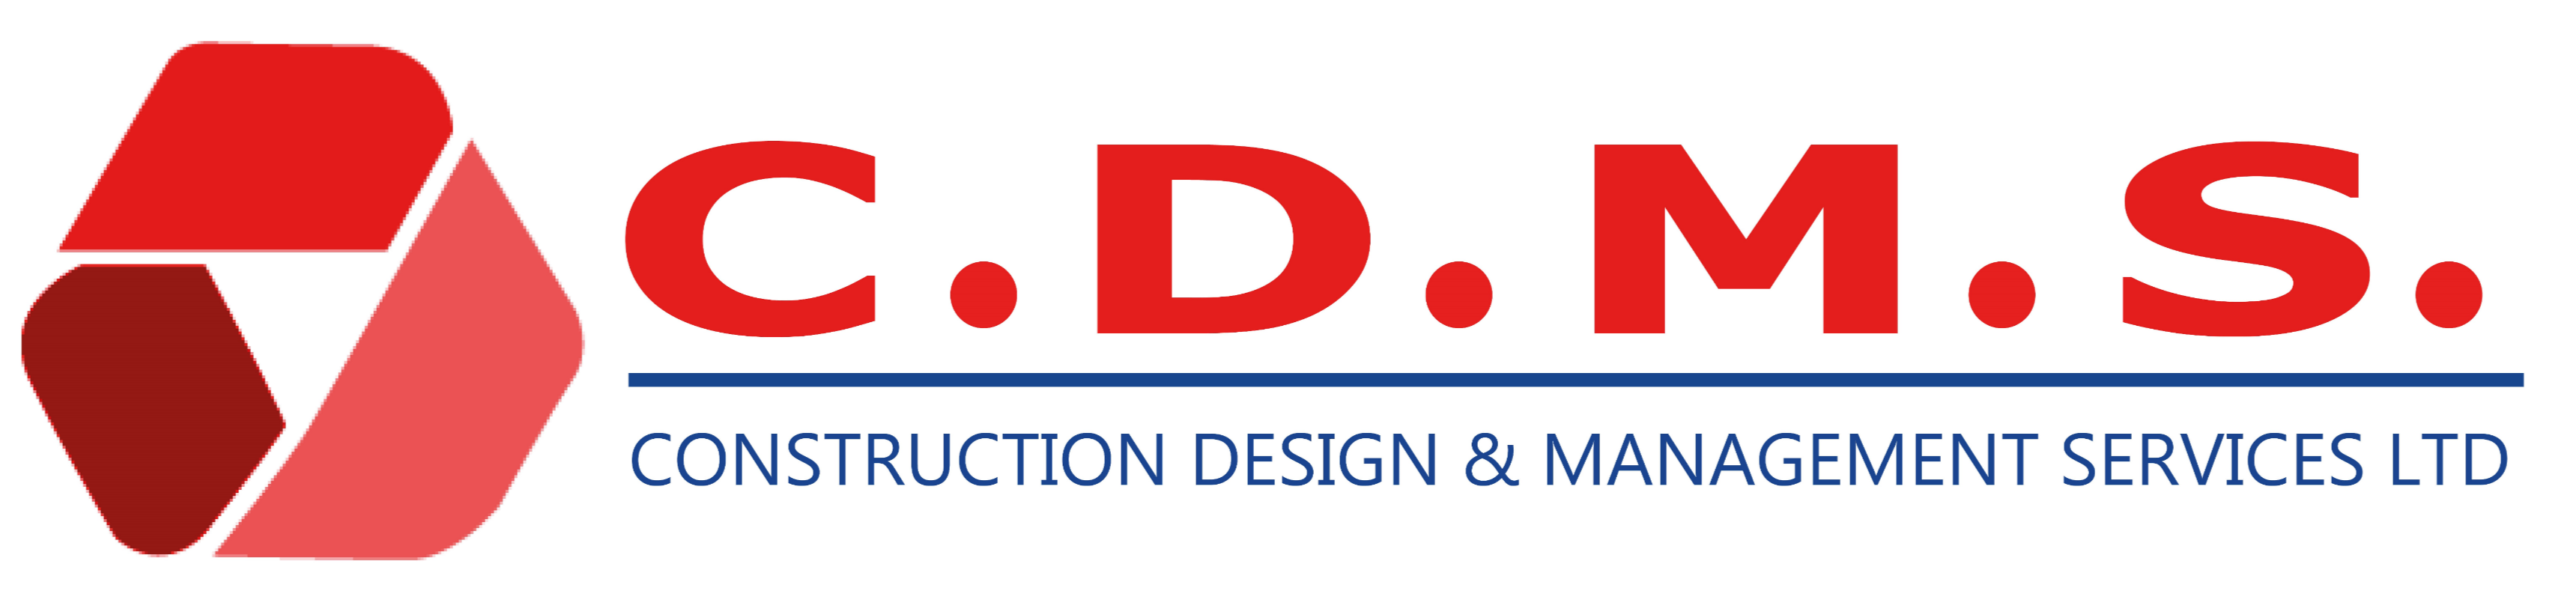 C.D.M.S. Construction Design & Management Services LTD.